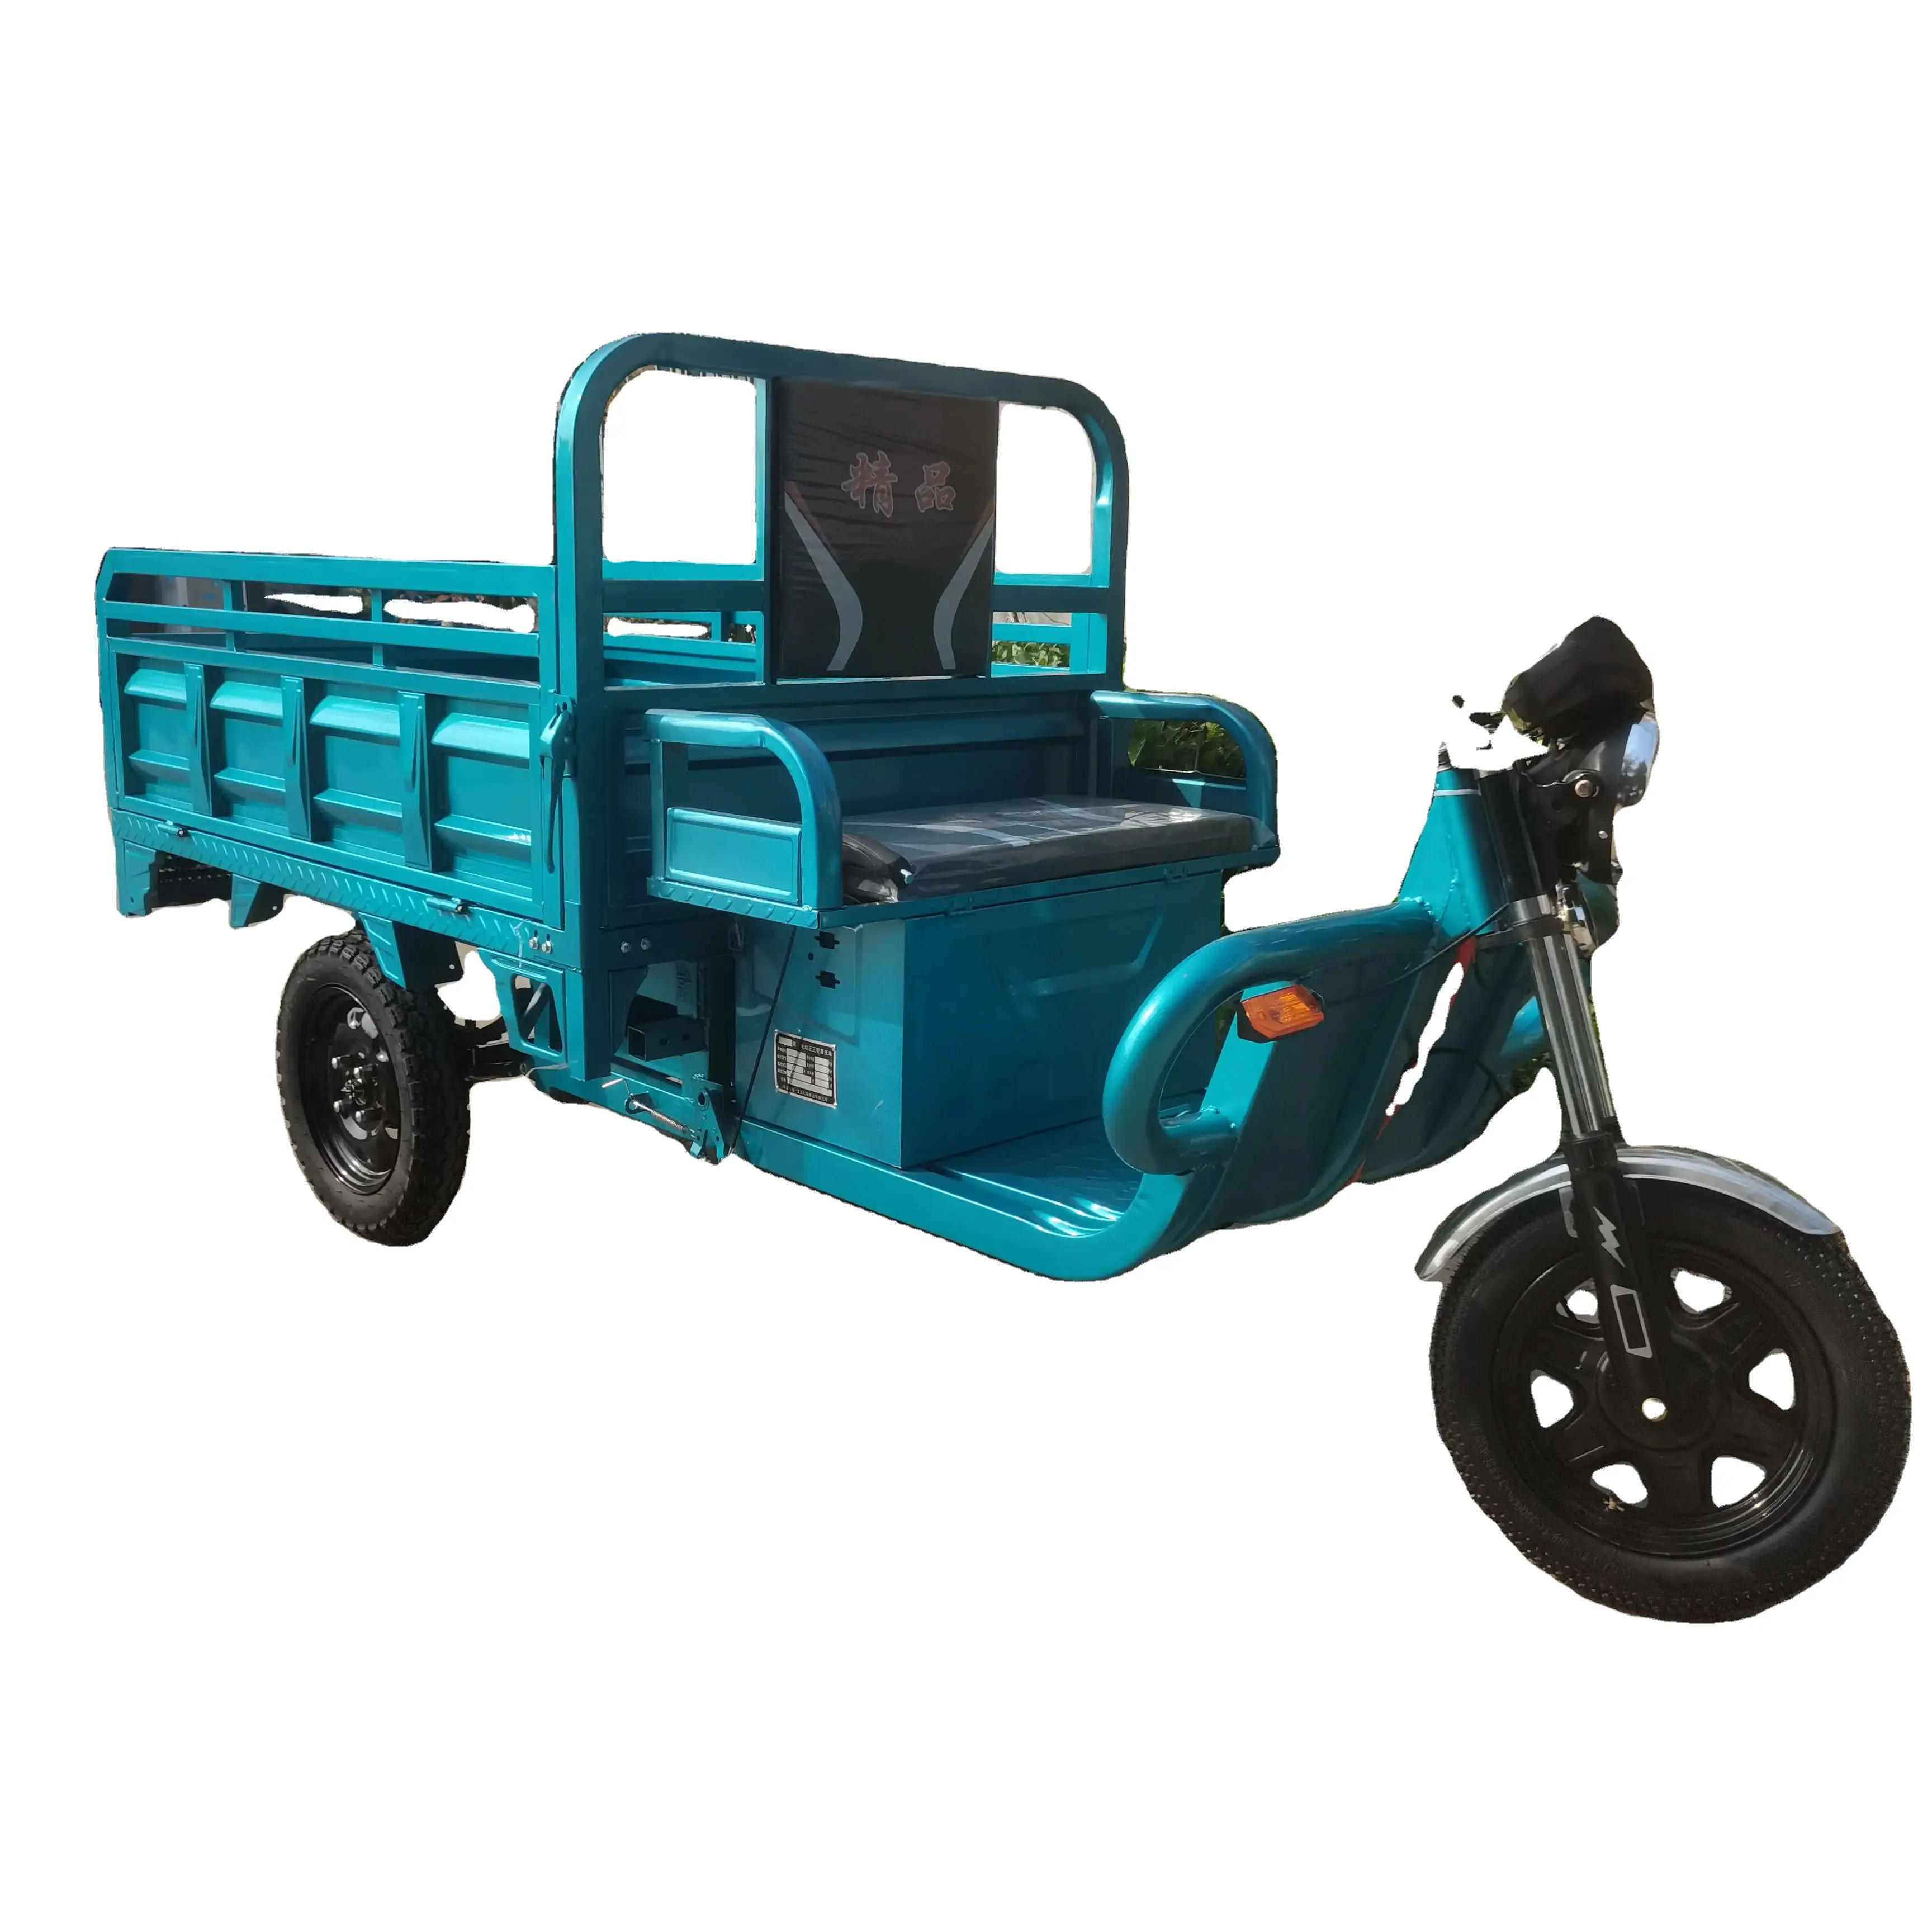 Triciclo de 3 ruedas del camión de la motocicleta eléctrica resistente de la capacidad de carga máxima